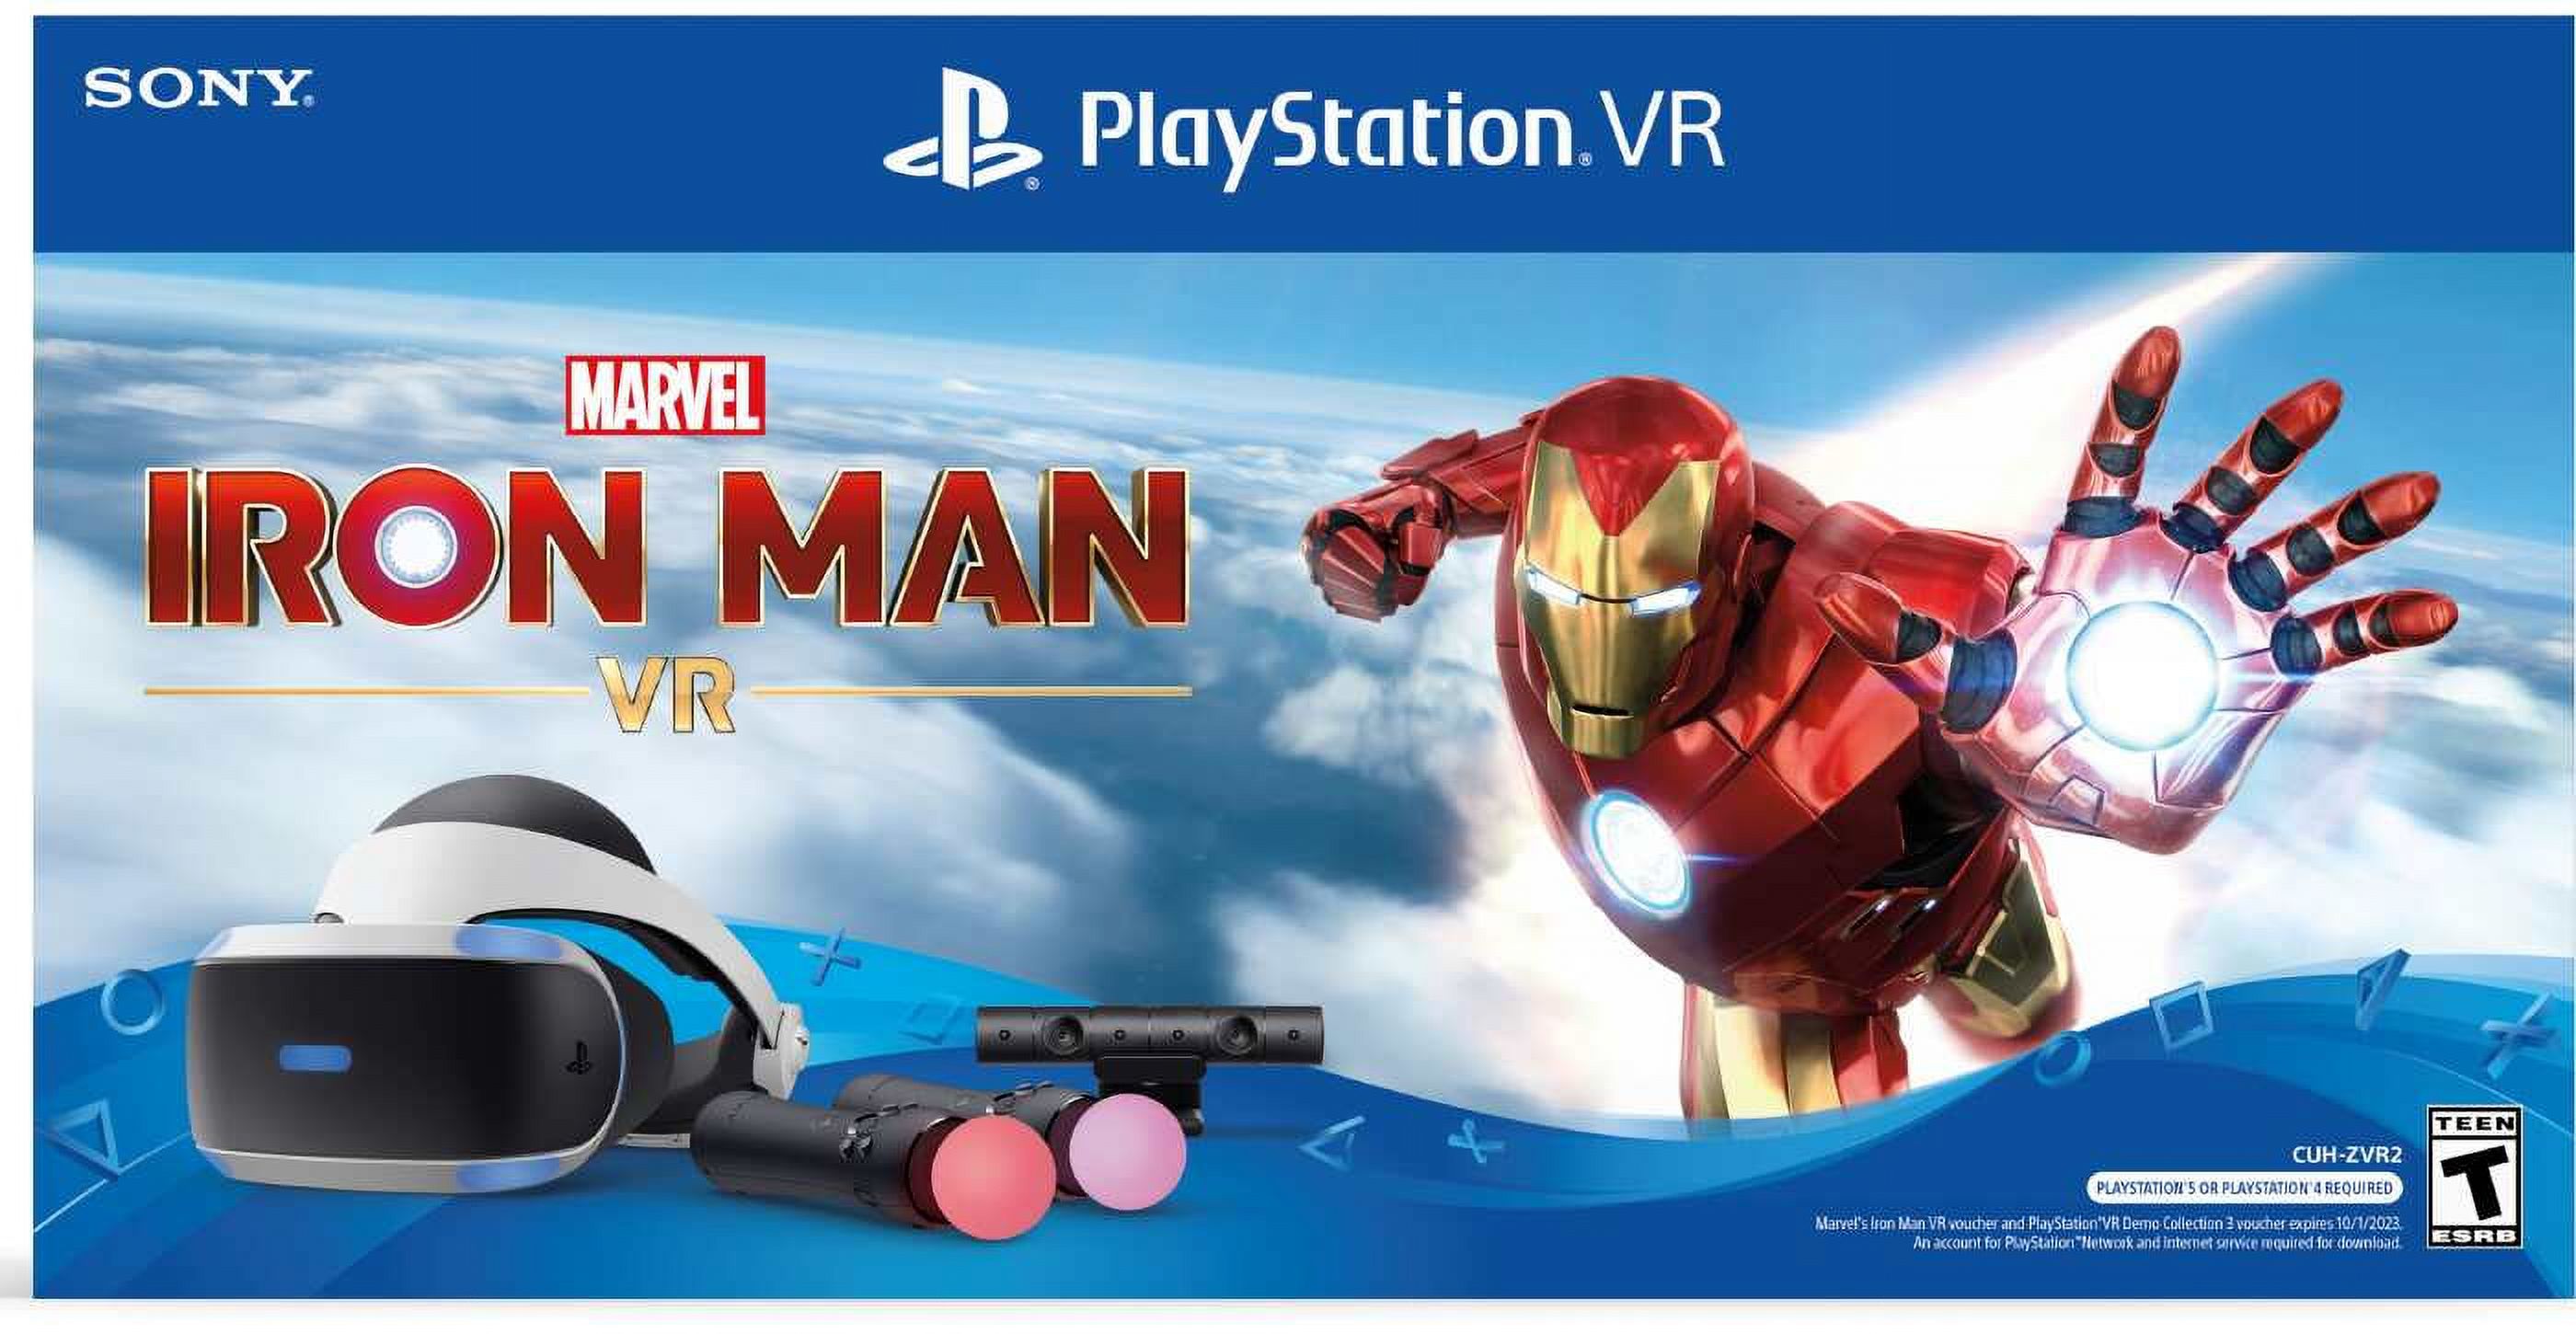 Playstation VR Headset with Marvel's Iron Man VR Mega Bundle - image 1 of 4